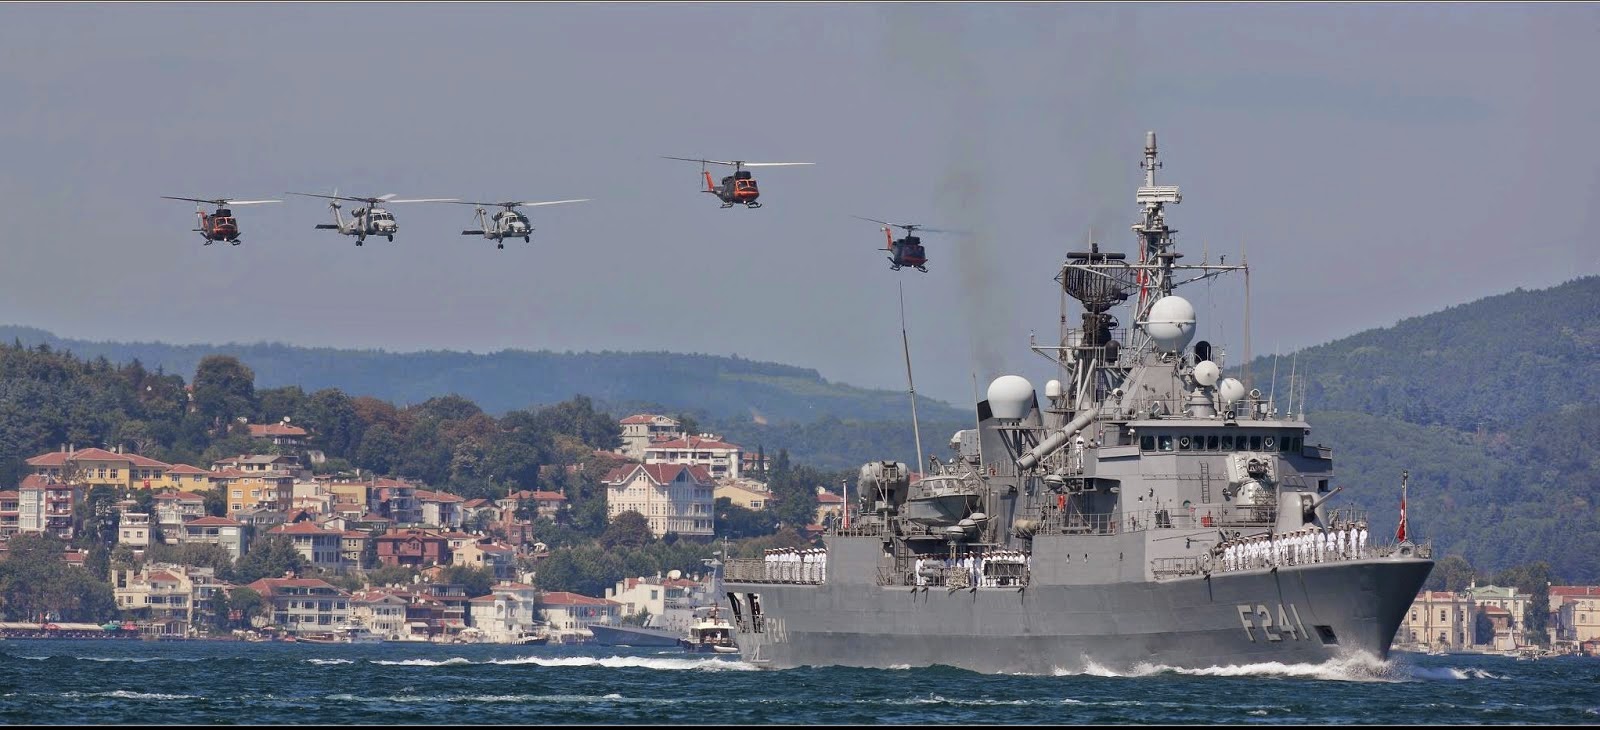 Οι τούρκοι στρατηγοί προκαλούν πέρα από τα όρια στο Αιγαίο